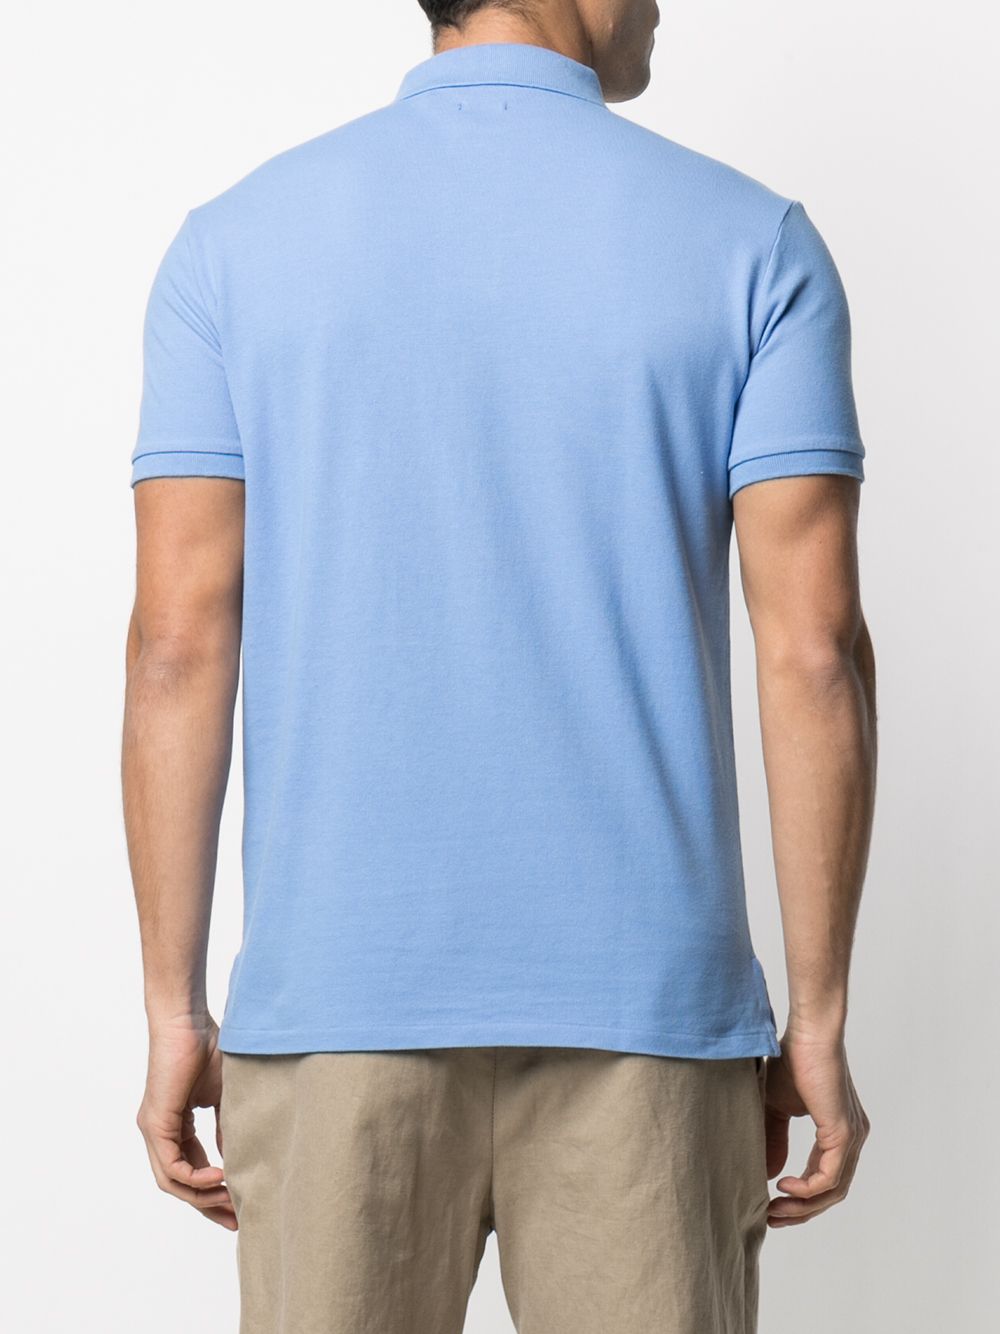 фото Polo ralph lauren рубашка поло с вышитым логотипом